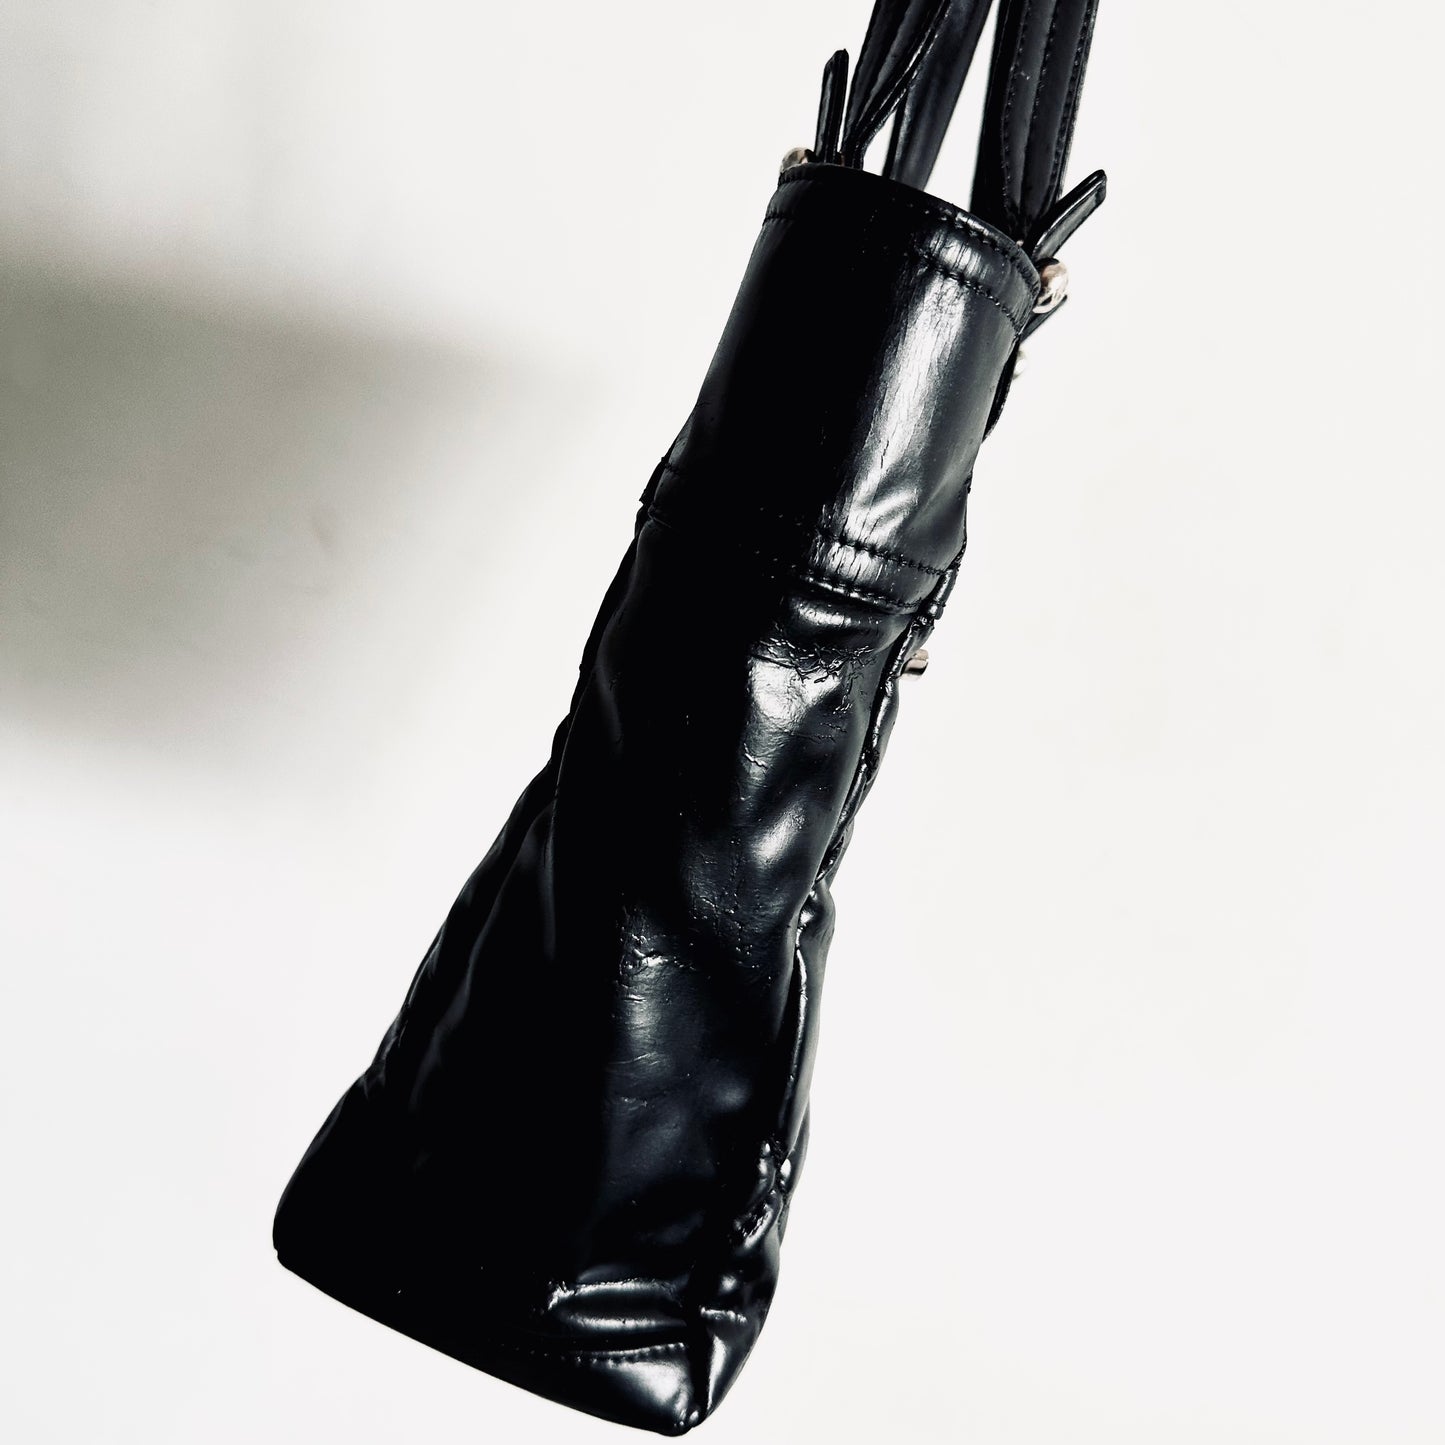 Chanel Black Paris Biarritz CC Monogram Logo Quilted Patent Leather Shoulder Shopper Tote Bag 13s